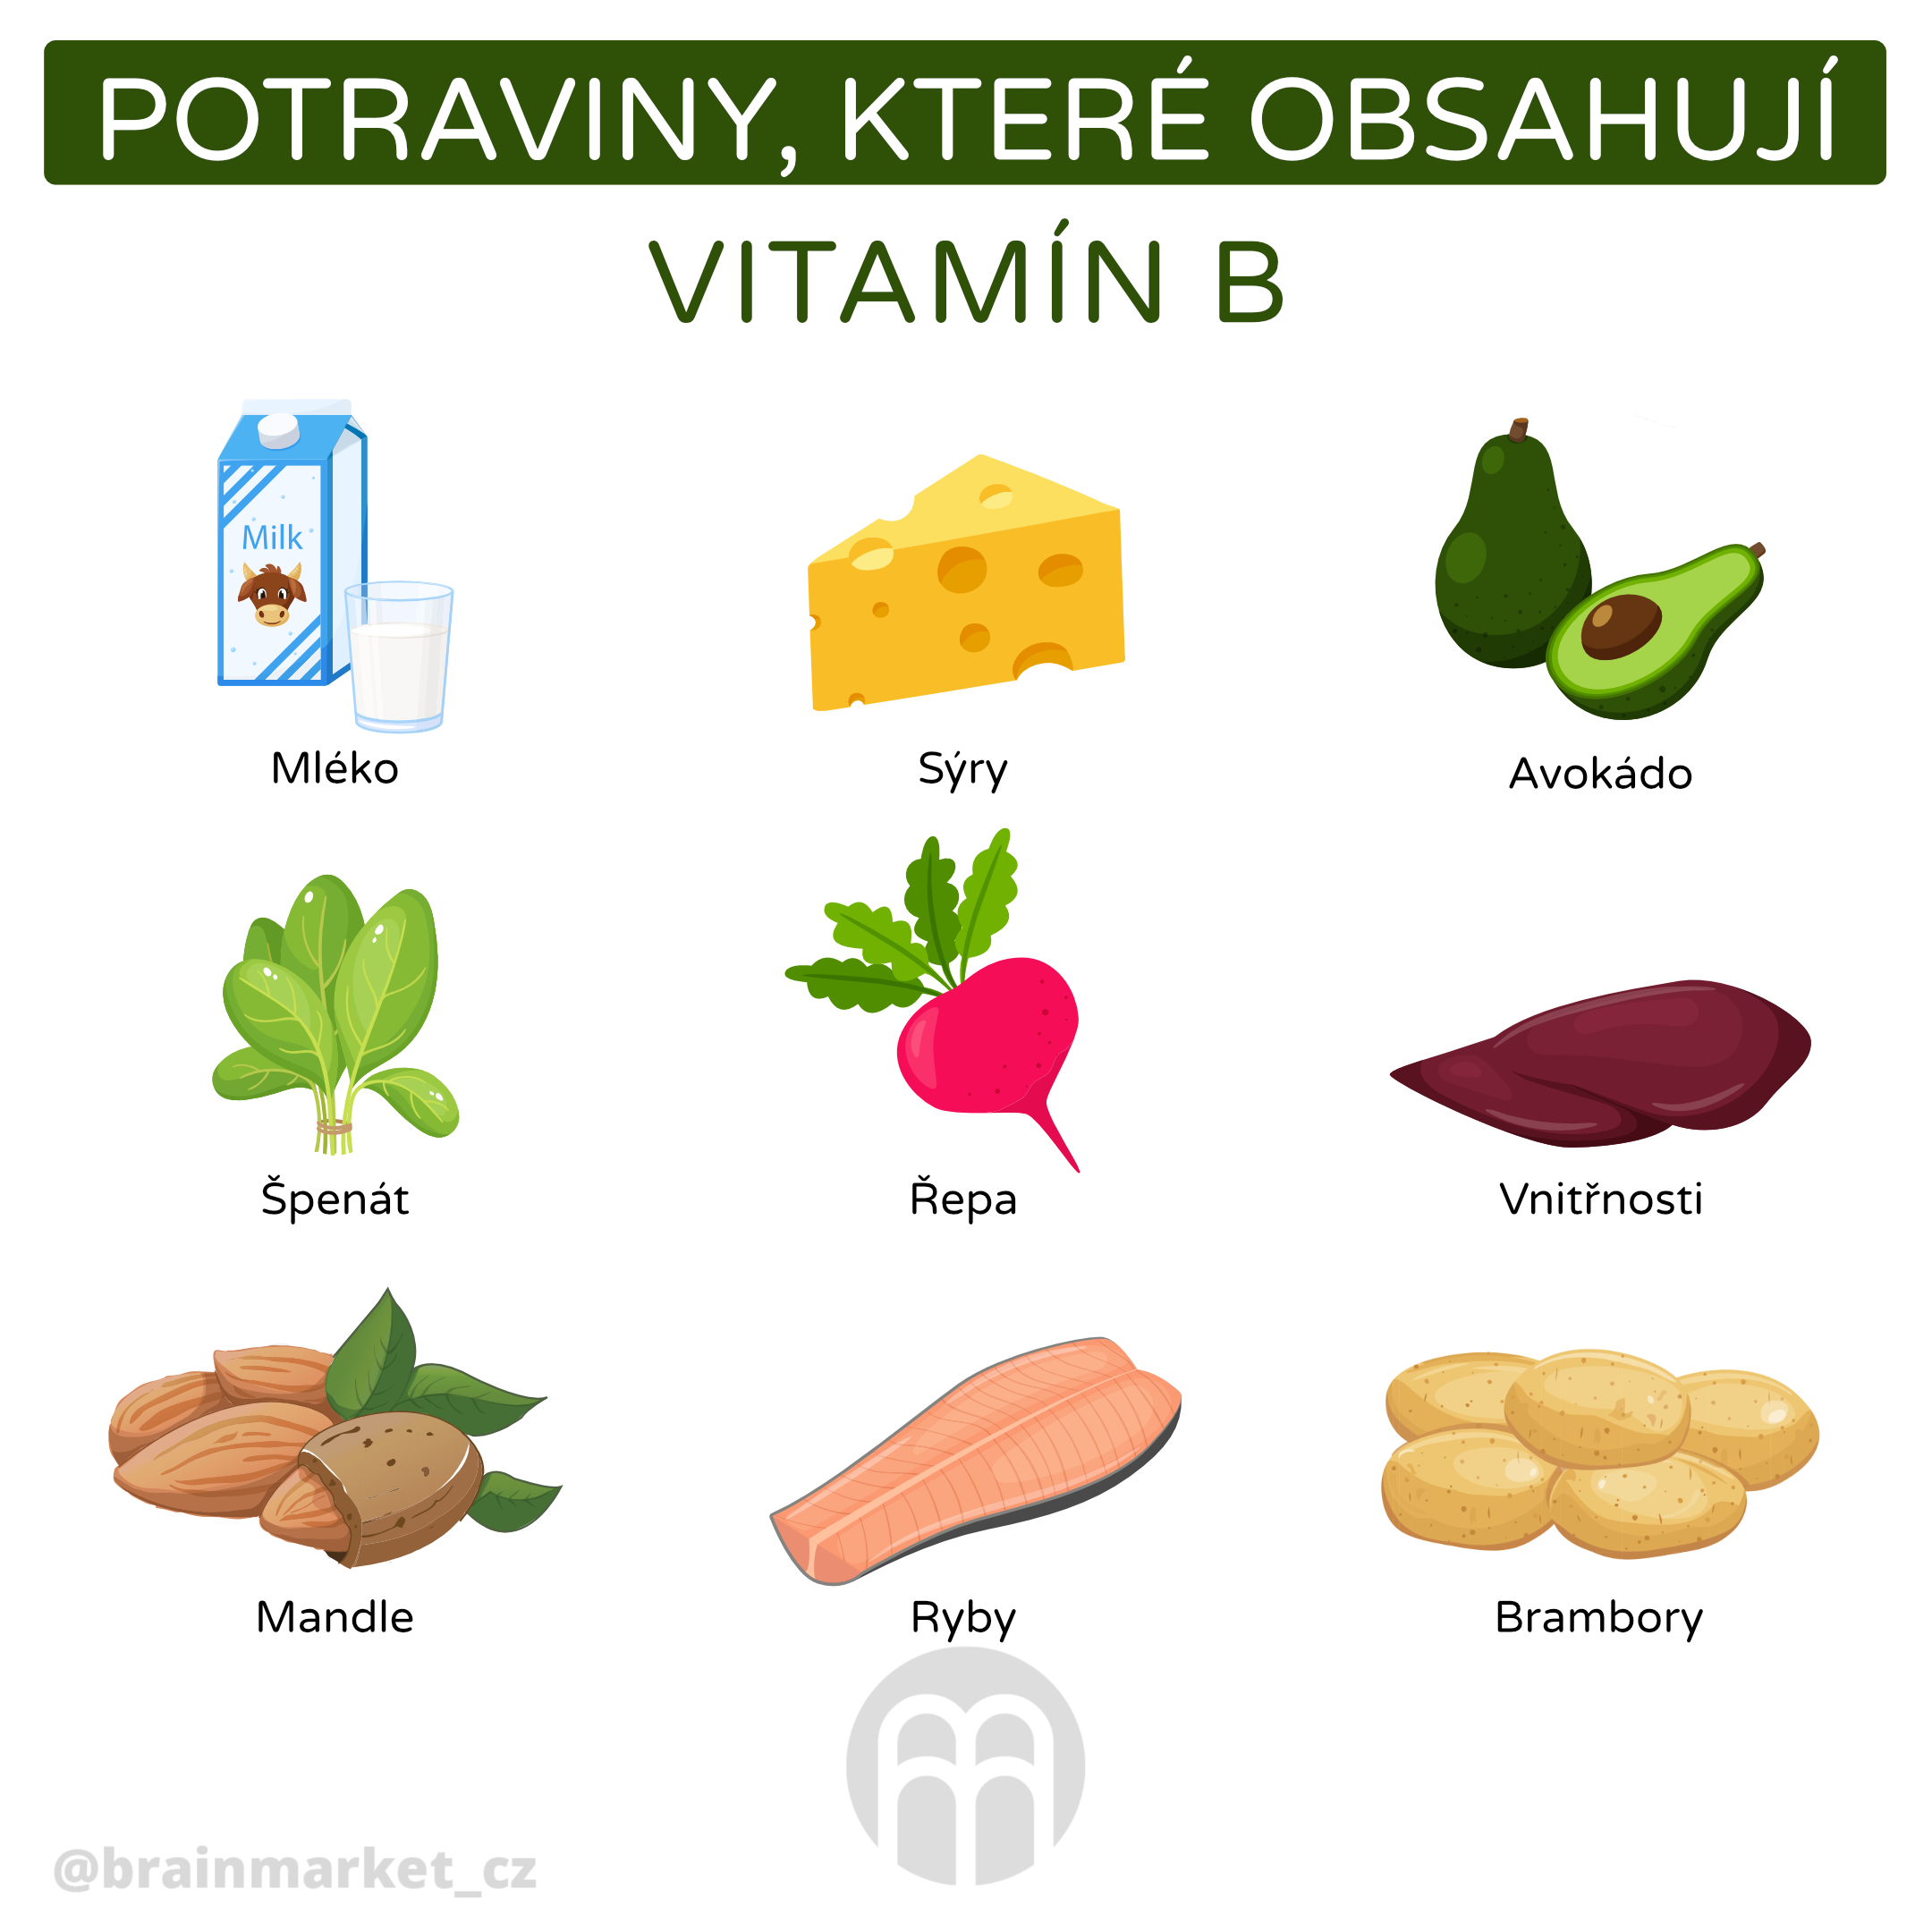 Která zelenina obsahuje vitamín B?